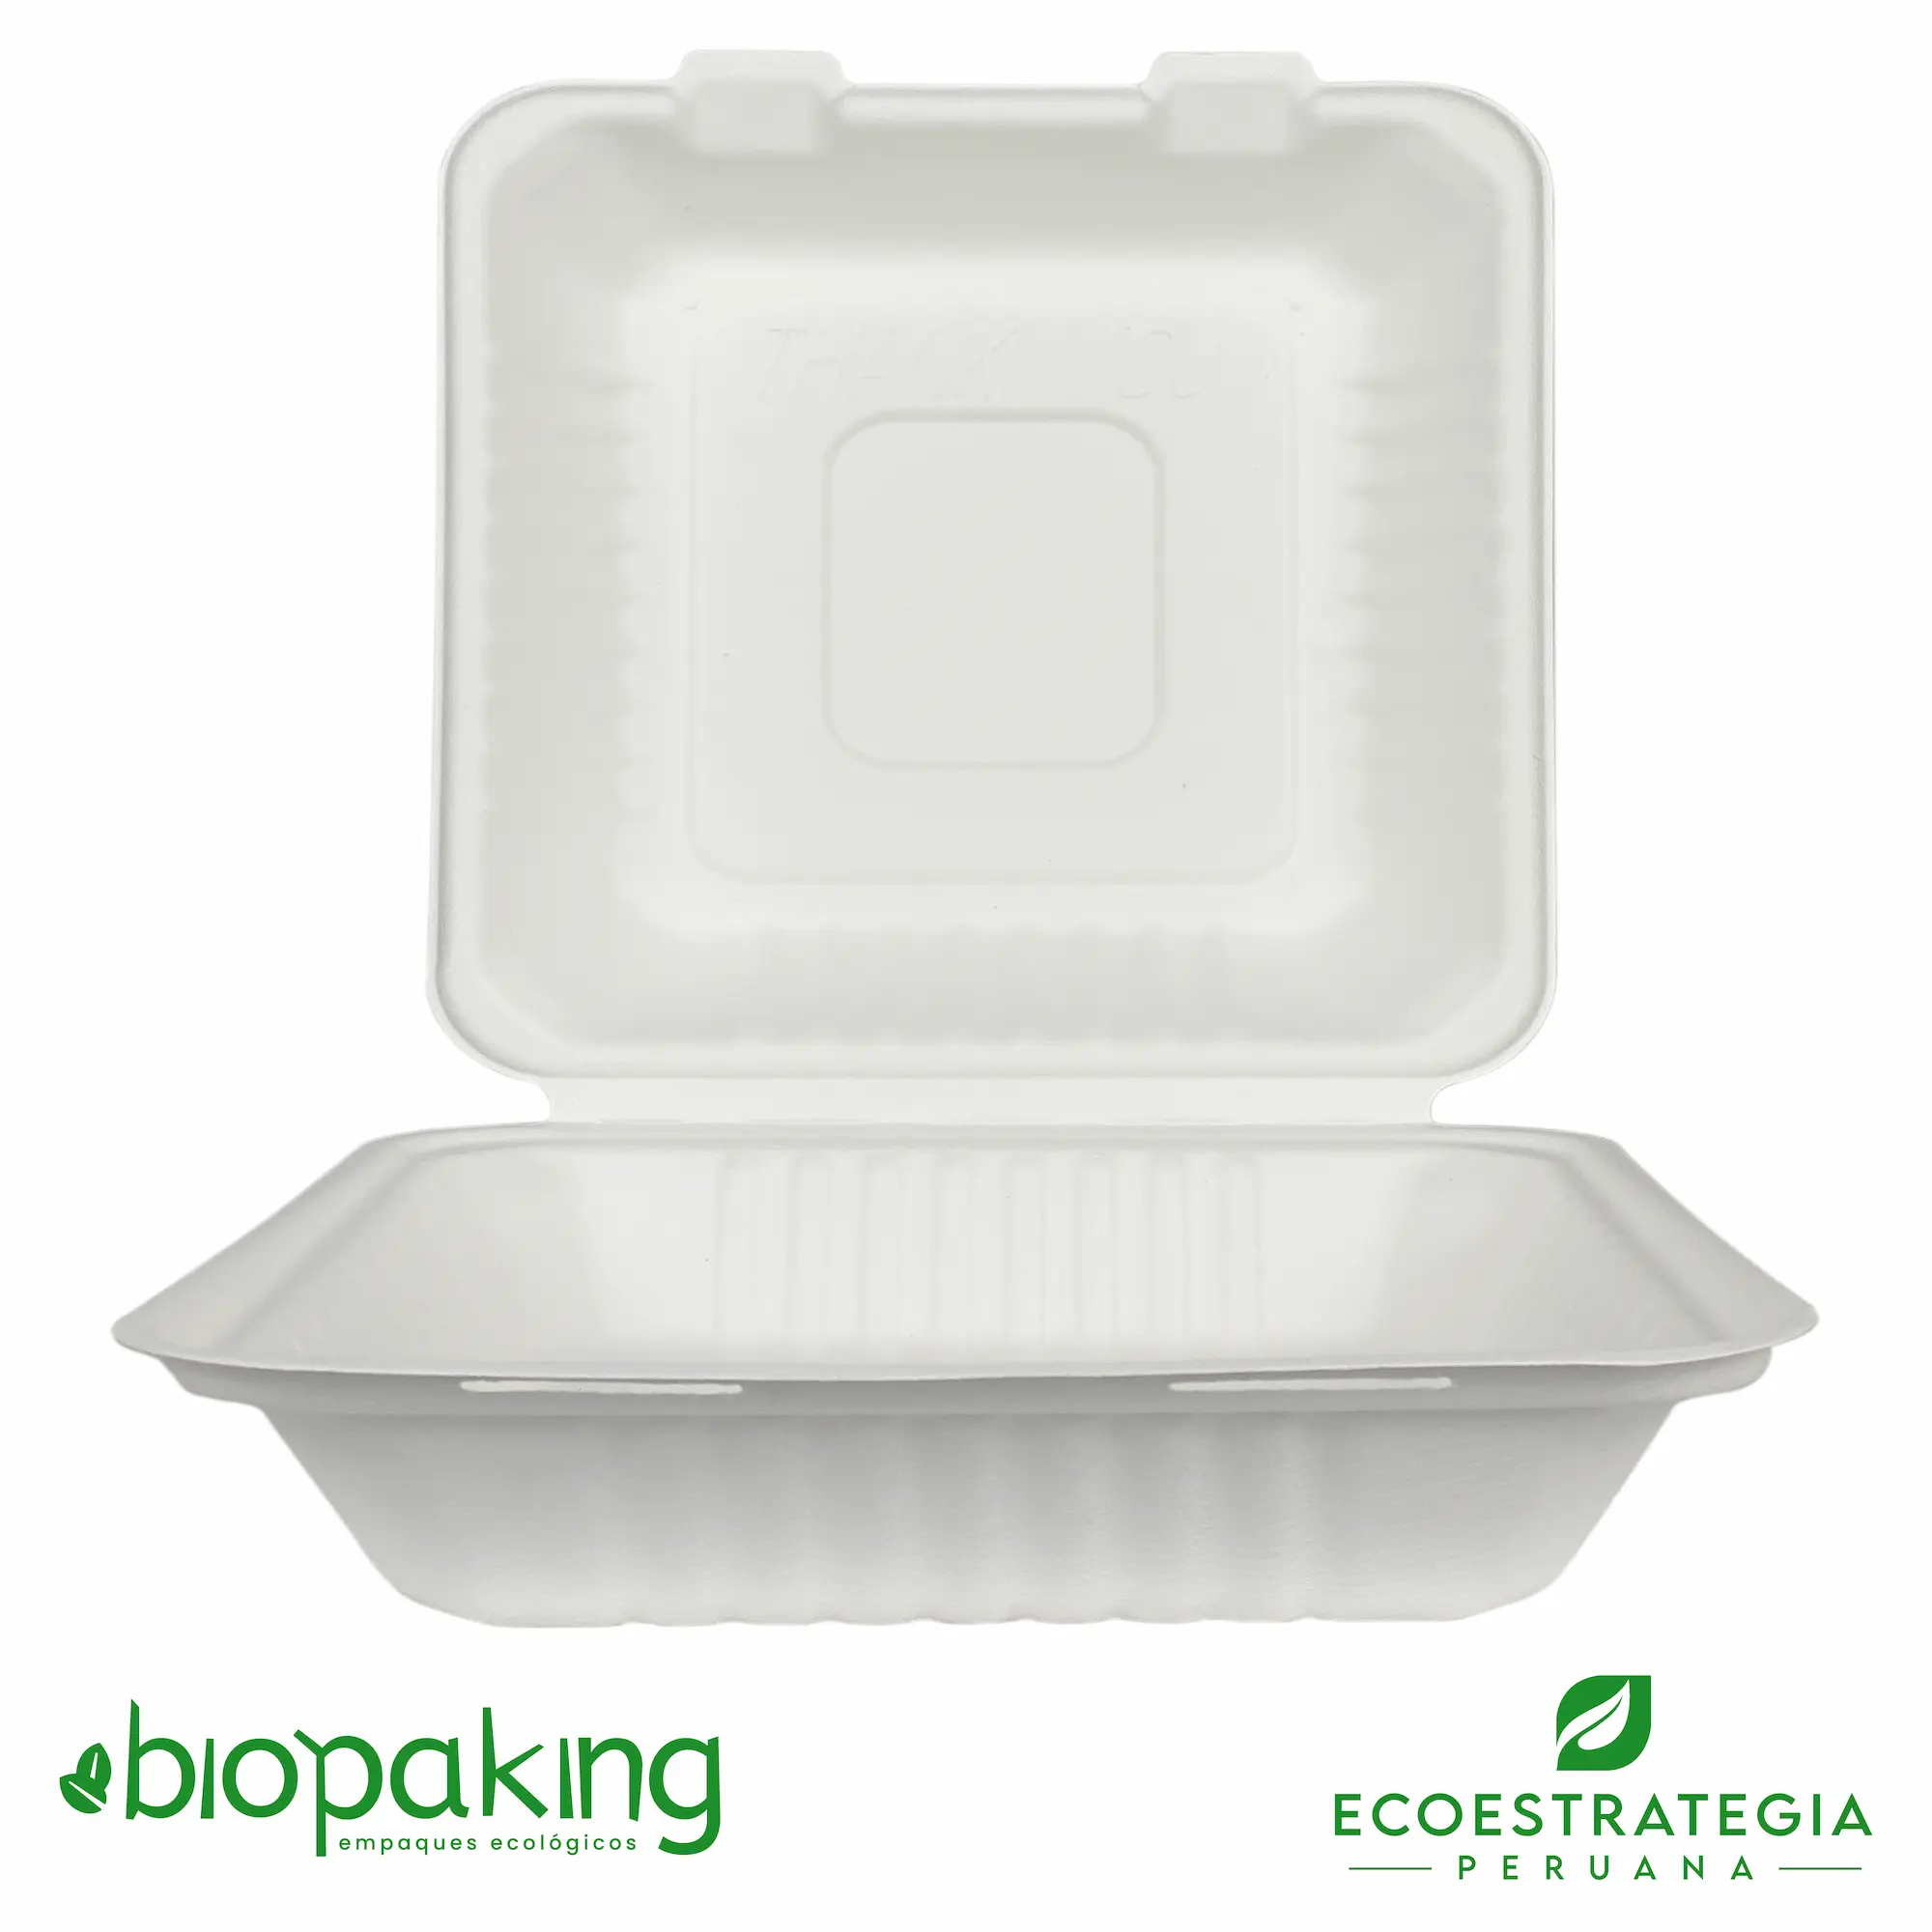  El envase biodegradable CT1 de código EP10 es un envase de fibra de caña conocido tambien como CT1 Biodegradable, Box grande, Contenedor de fibra de caña ct1, descartable biodegradable ct1, contenedor cuadrado 1500 ml, contenedor biodegradable bisagra 9 x 9”, envase 9 x 9 pulgadas pulpa de caña, ksfc-01, cbx-23-g, fbox9x9, bcs10, 100029, envases biodegradables ct1, b09, tp004 ct1, contenedor eco 1500ml (ct1), contenedor bisagra 1200 ml, envase biodegradable 9 x 9”, Envase grande, Contenedor 1 bioform fibra-ks bagazo de caña, contenedor 1 de fibra, contenedor eco 1250 (23x15), contenedor ct1, ct1 fibra de caña, ct1 envase biodegradable Perú, importadores de envases biodegradable ct1, distribuidores ct1 biodegradable, mayoristas ct1 biodegradable.